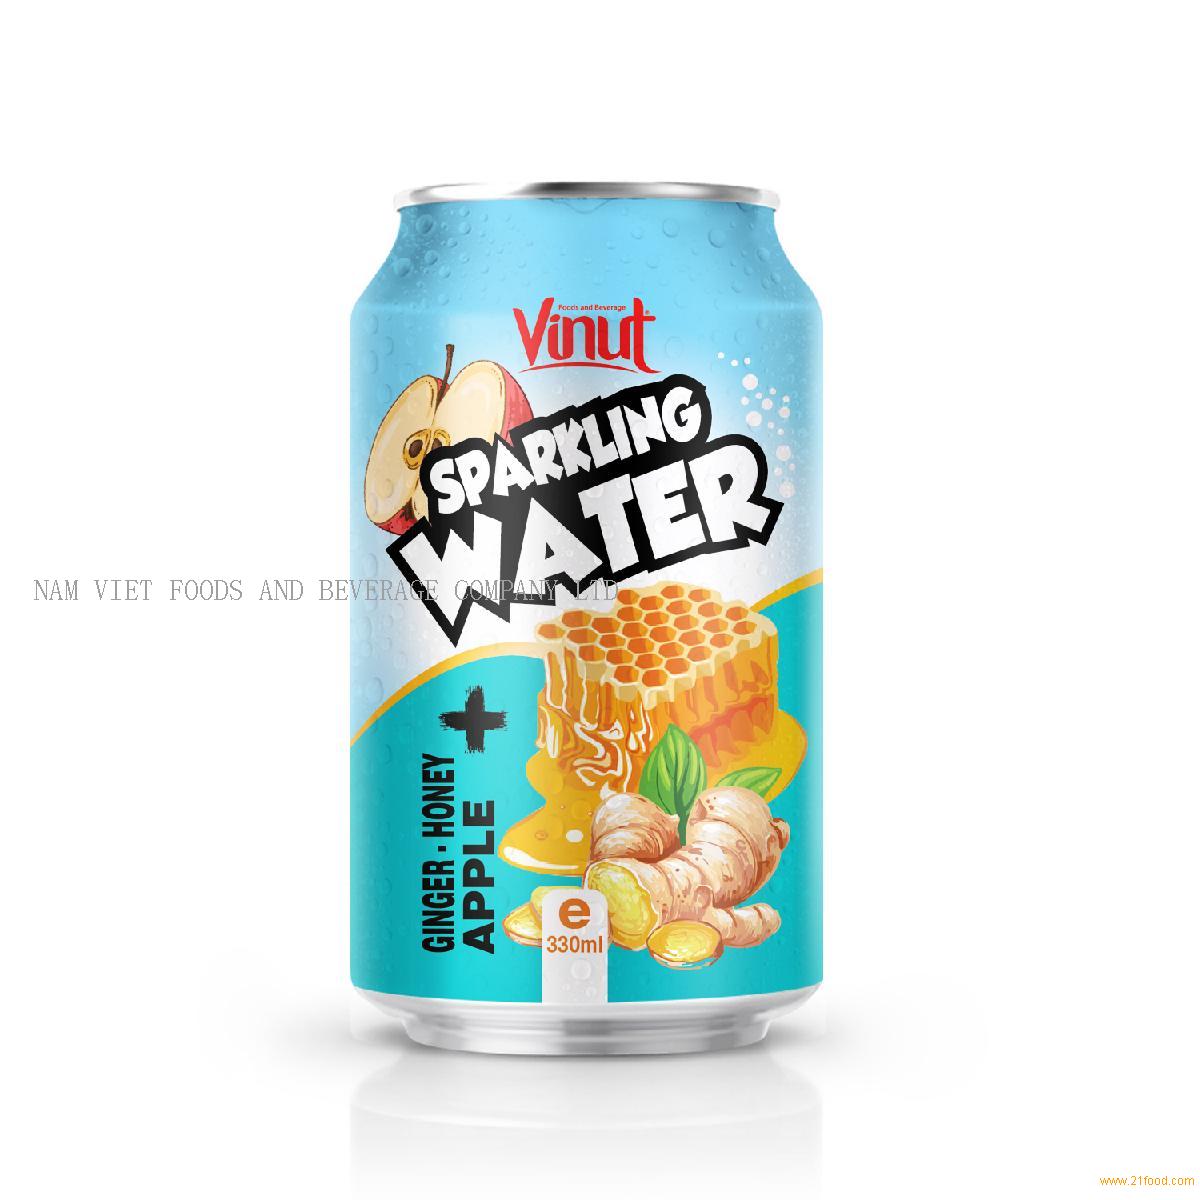 330ml VINUT Ginger Honey Apple Sparkling water